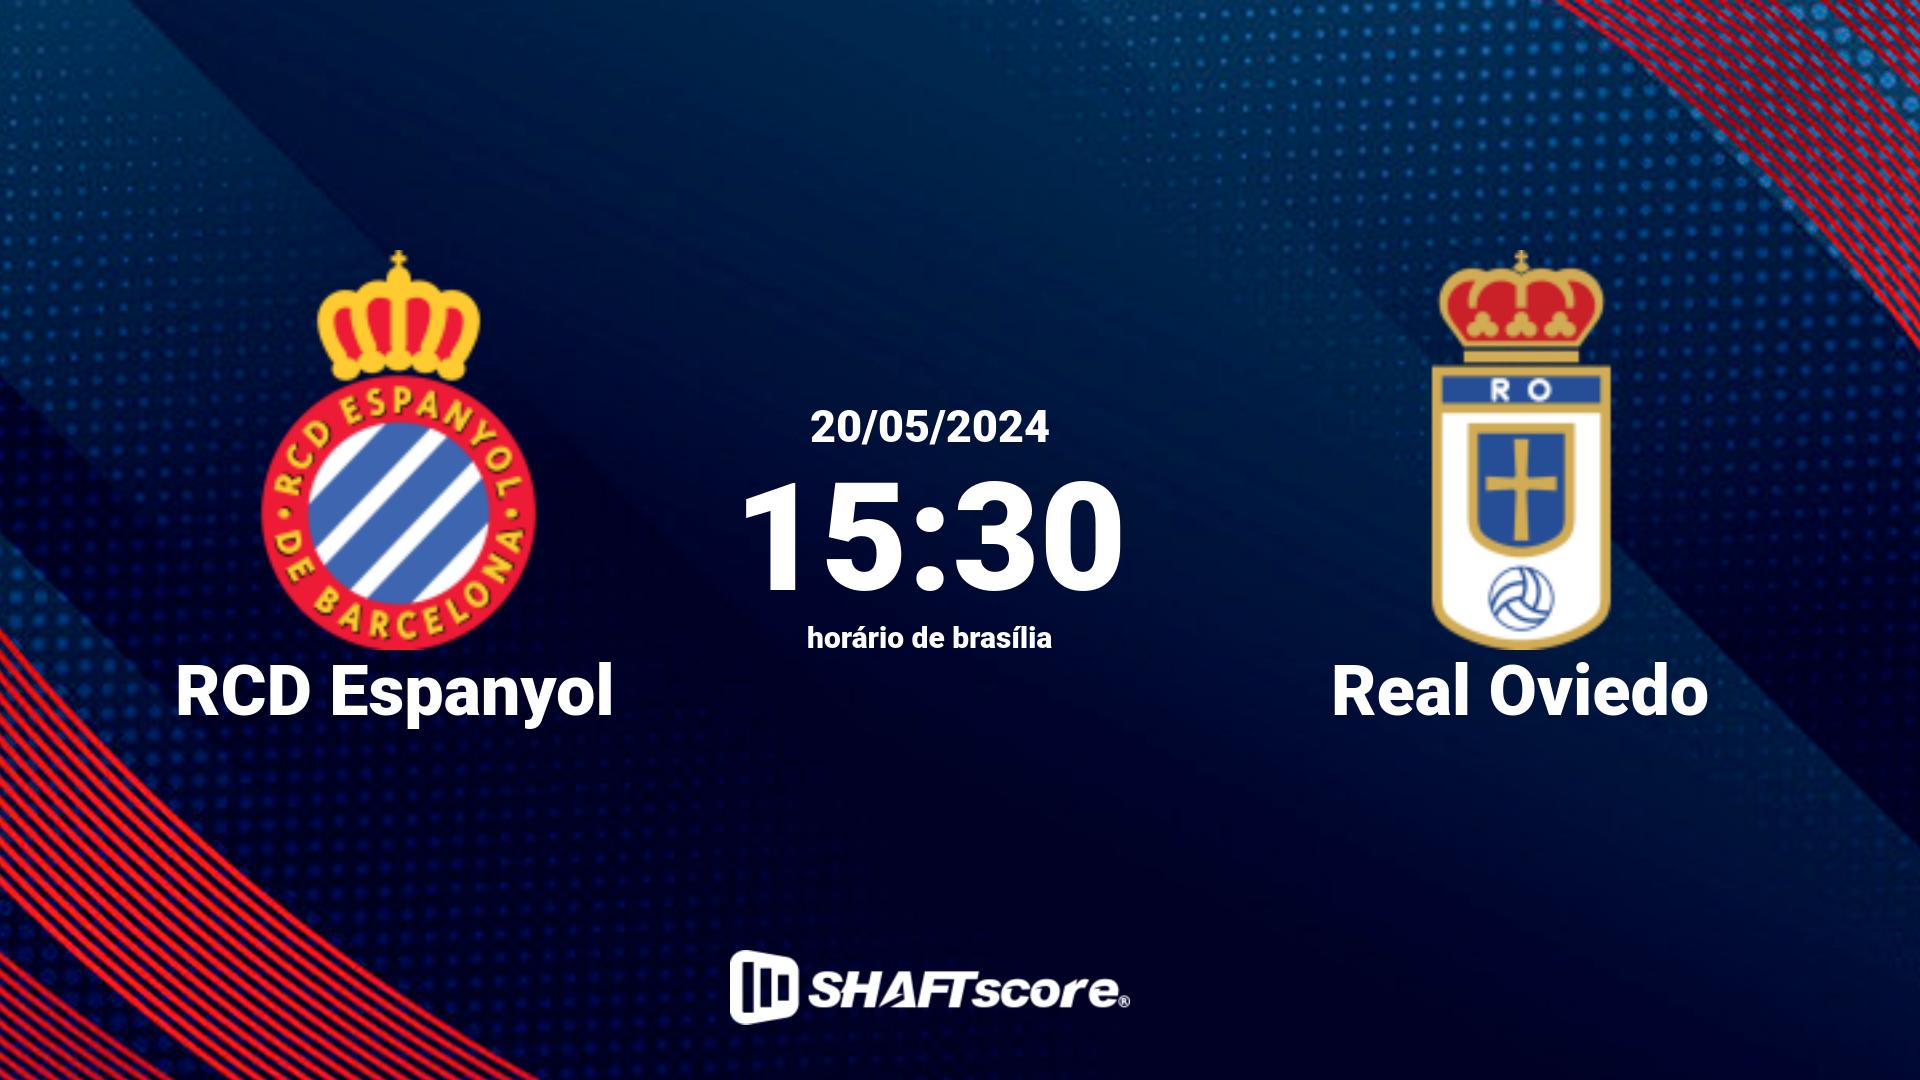 Estatísticas do jogo RCD Espanyol vs Real Oviedo 20.05 15:30